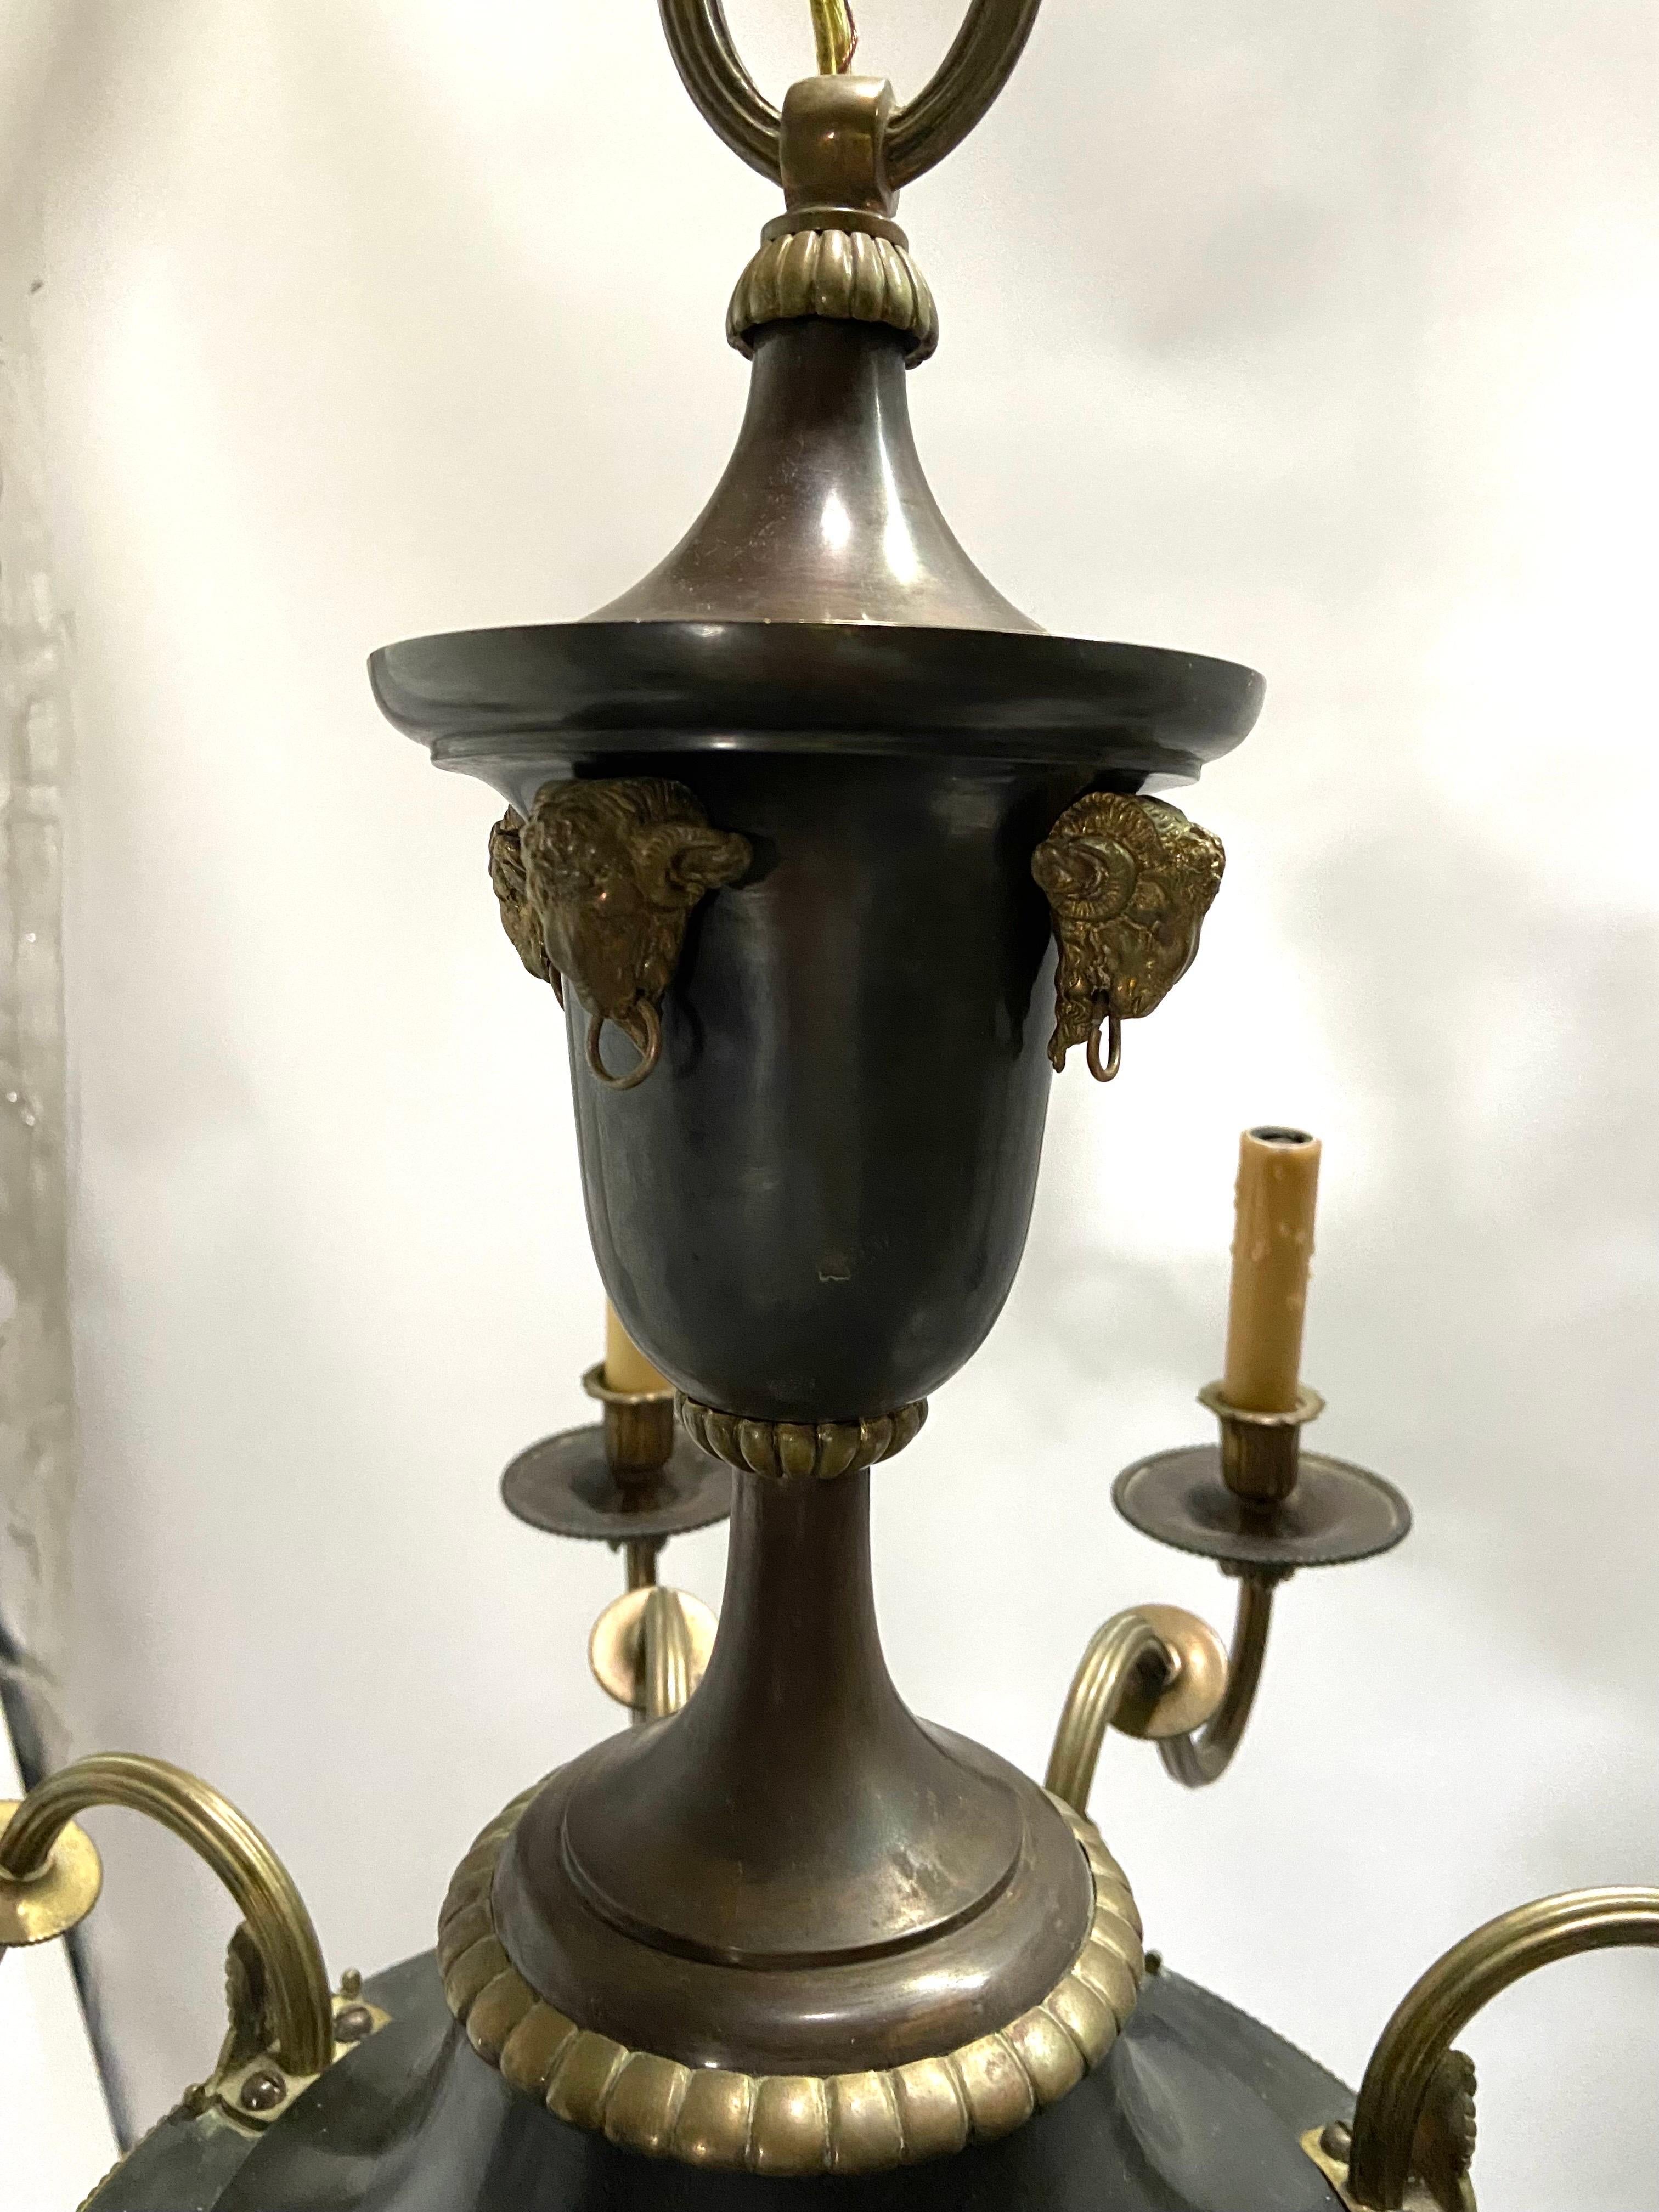 Lustre ancien, datant d'entre 1900 et 1920, de style Empire français à huit bras en bronze avec des détails en forme de tête de bélier. Ce lustre à huit lumières présente des détails de volutes et de feuilles d'acanthe sur chaque bras cannelé et